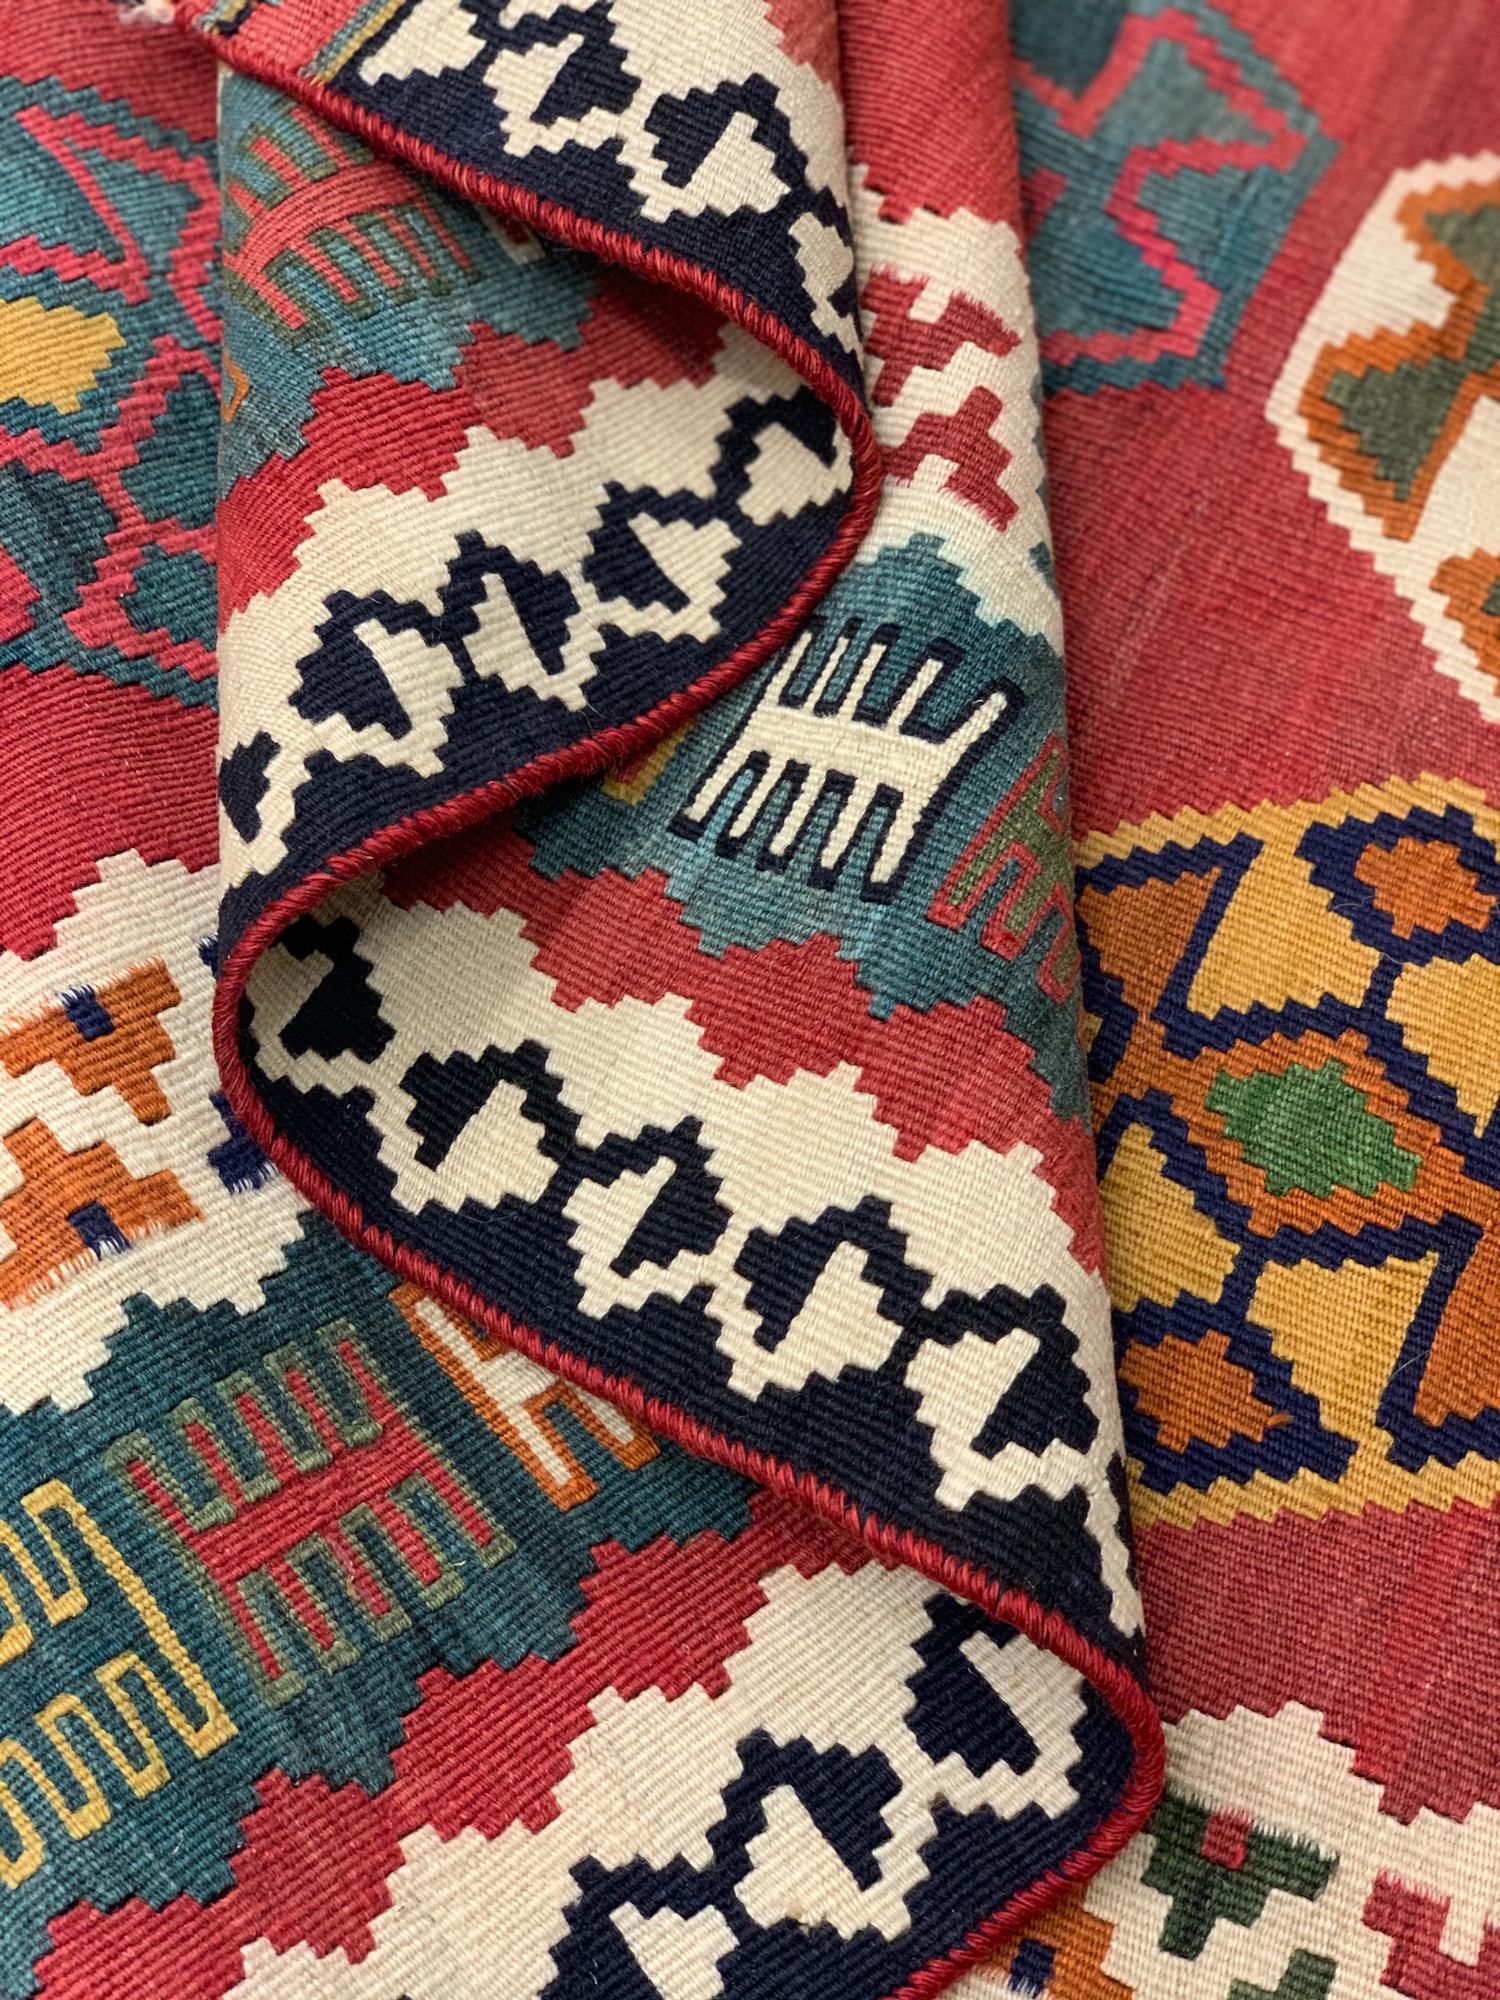 20th Century Antique Kilim Rugs for Sale Caucasian Kilims Carpet  For Sale